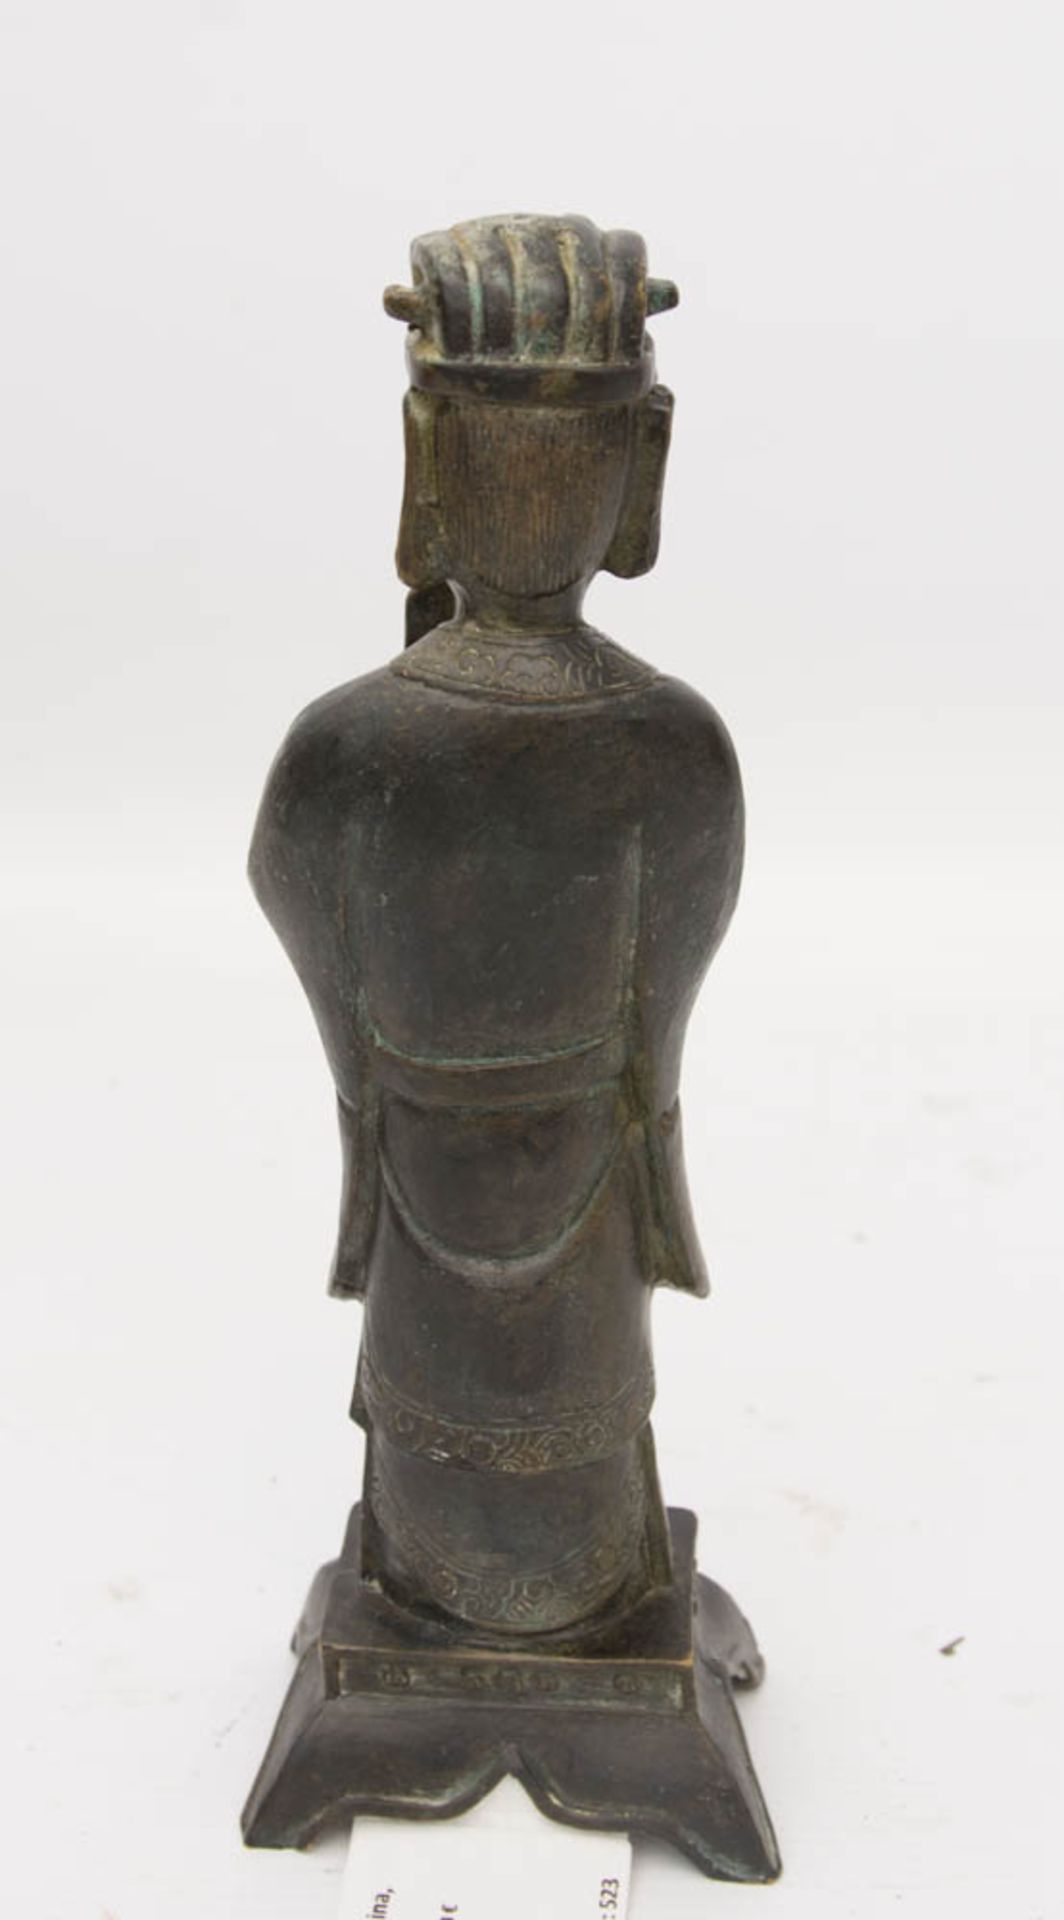 ASIATISCHER GELEHRTER, Bronze, China, 19./20. Jh.Sehr guter Erhaltungszustand.8 x 6 x 24 cm. - Bild 4 aus 5